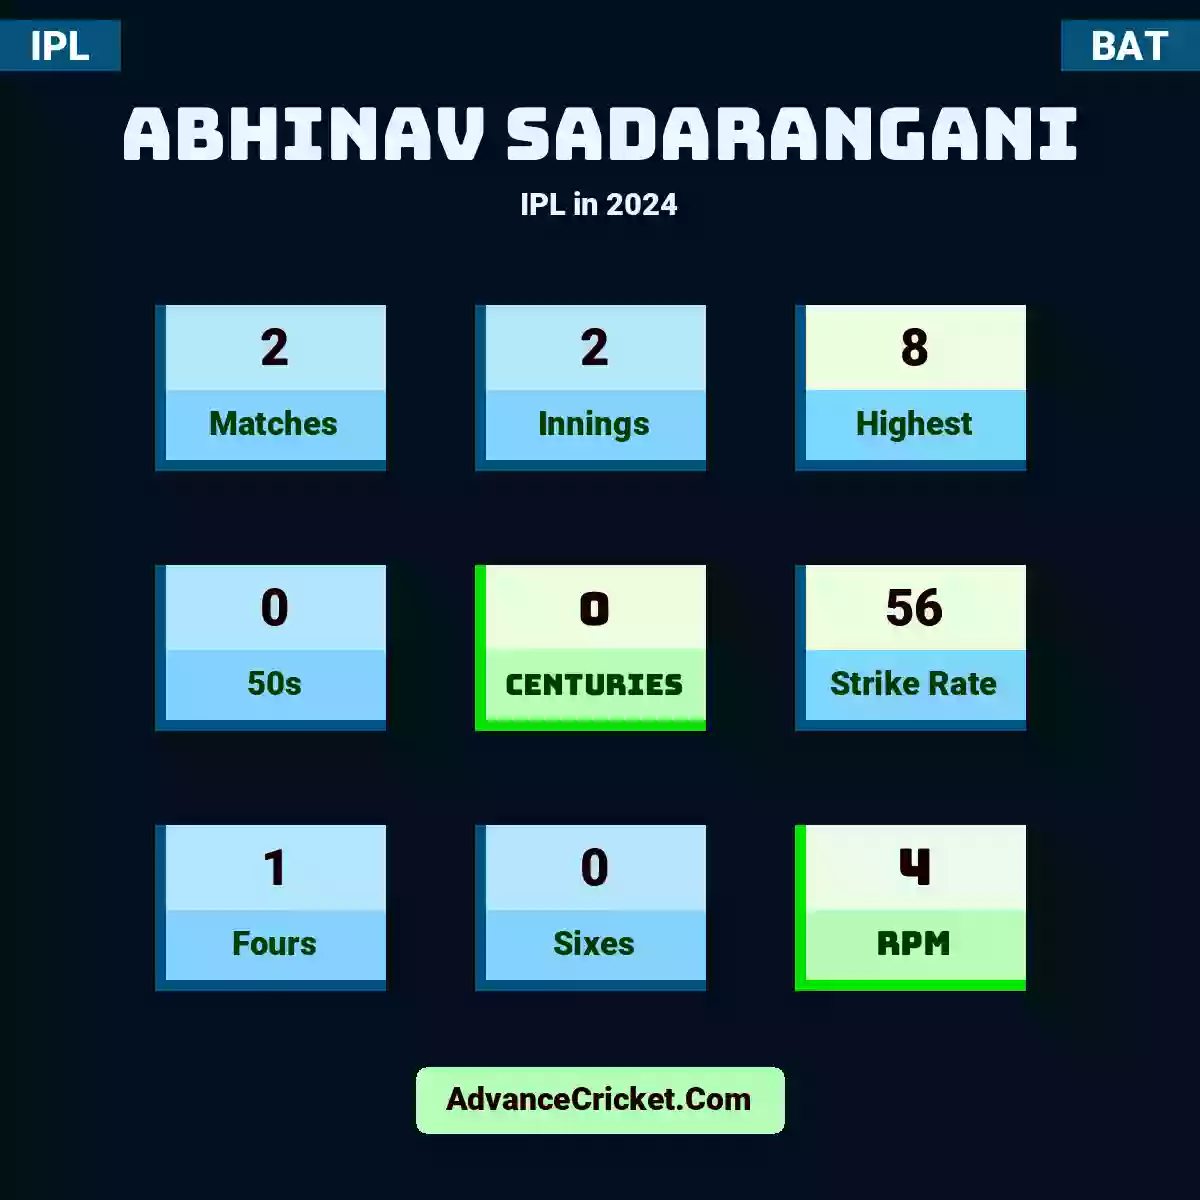 Abhinav Sadarangani IPL  in 2024, Abhinav Sadarangani played 2 matches, scored 8 runs as highest, 0 half-centuries, and 0 centuries, with a strike rate of 56. A.Sadarangani hit 1 fours and 0 sixes, with an RPM of 4.